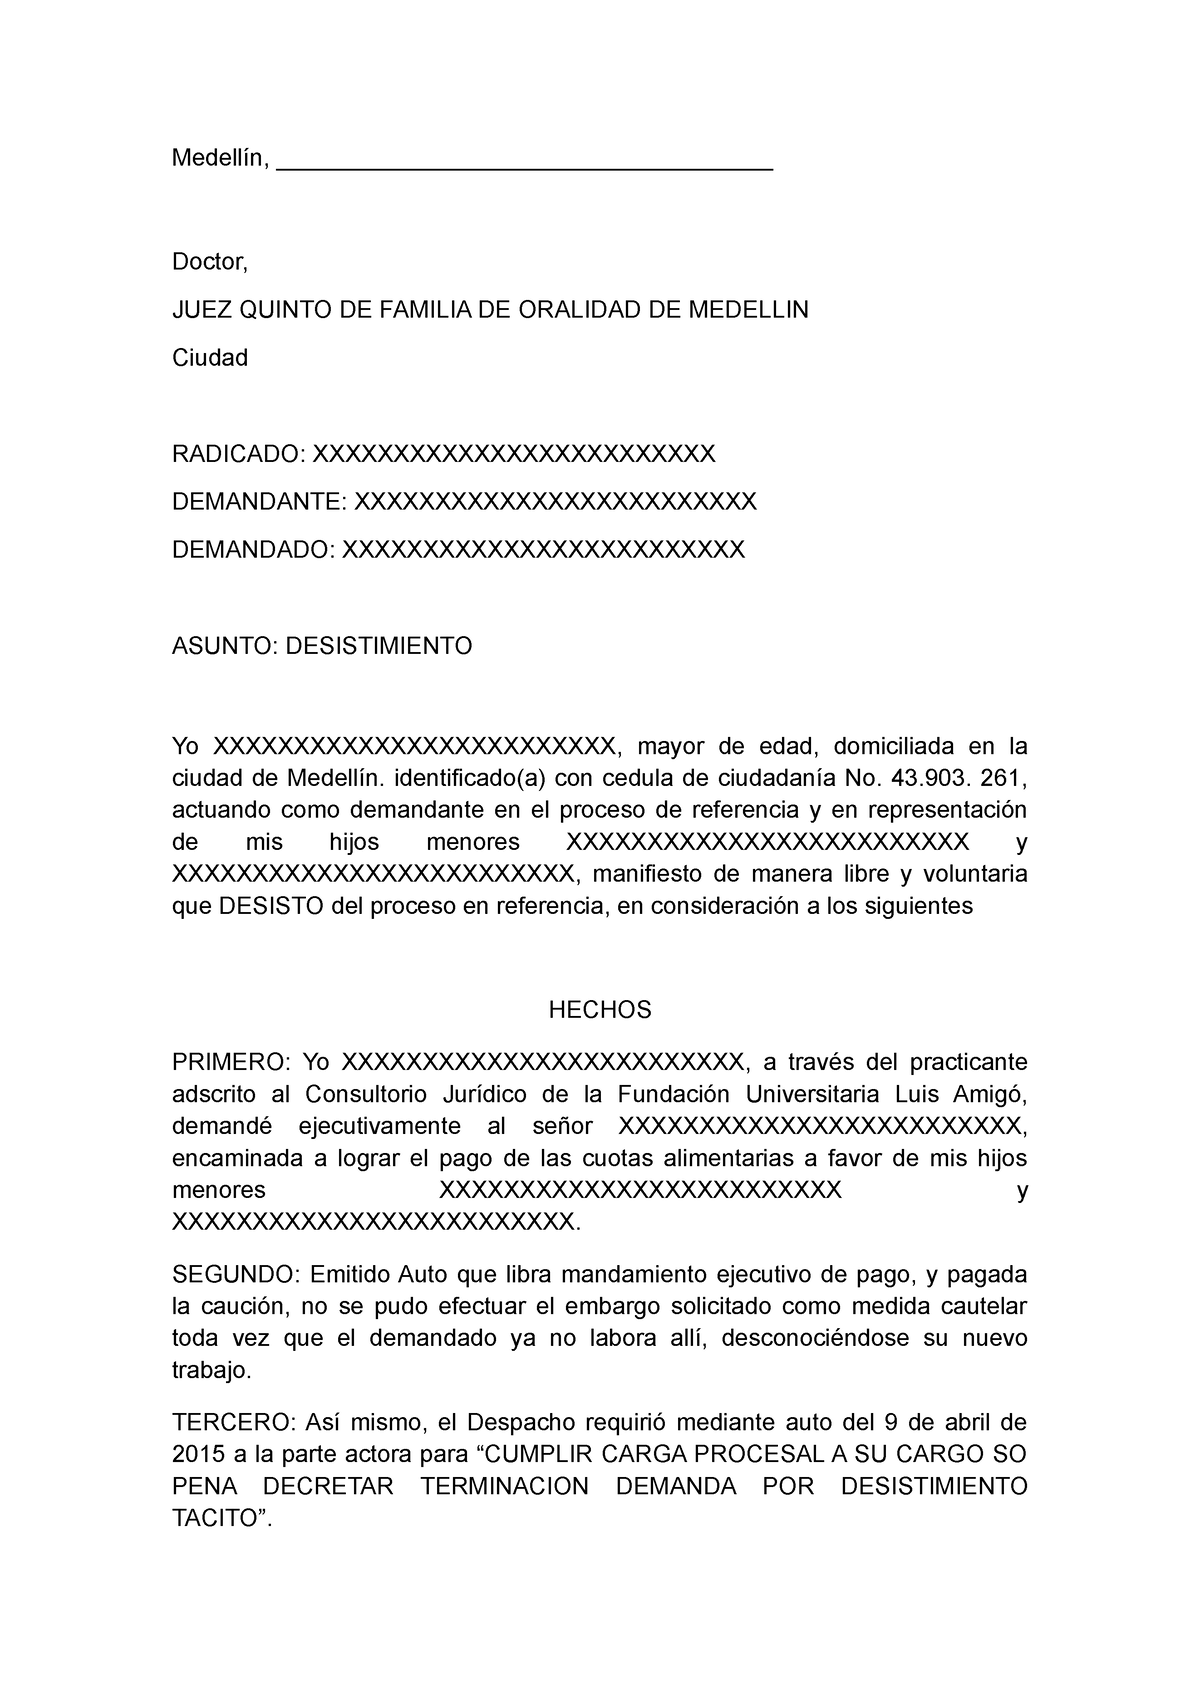 Formato Desistimiento Proceso Judicial - Medellín, Doctor, - Studocu